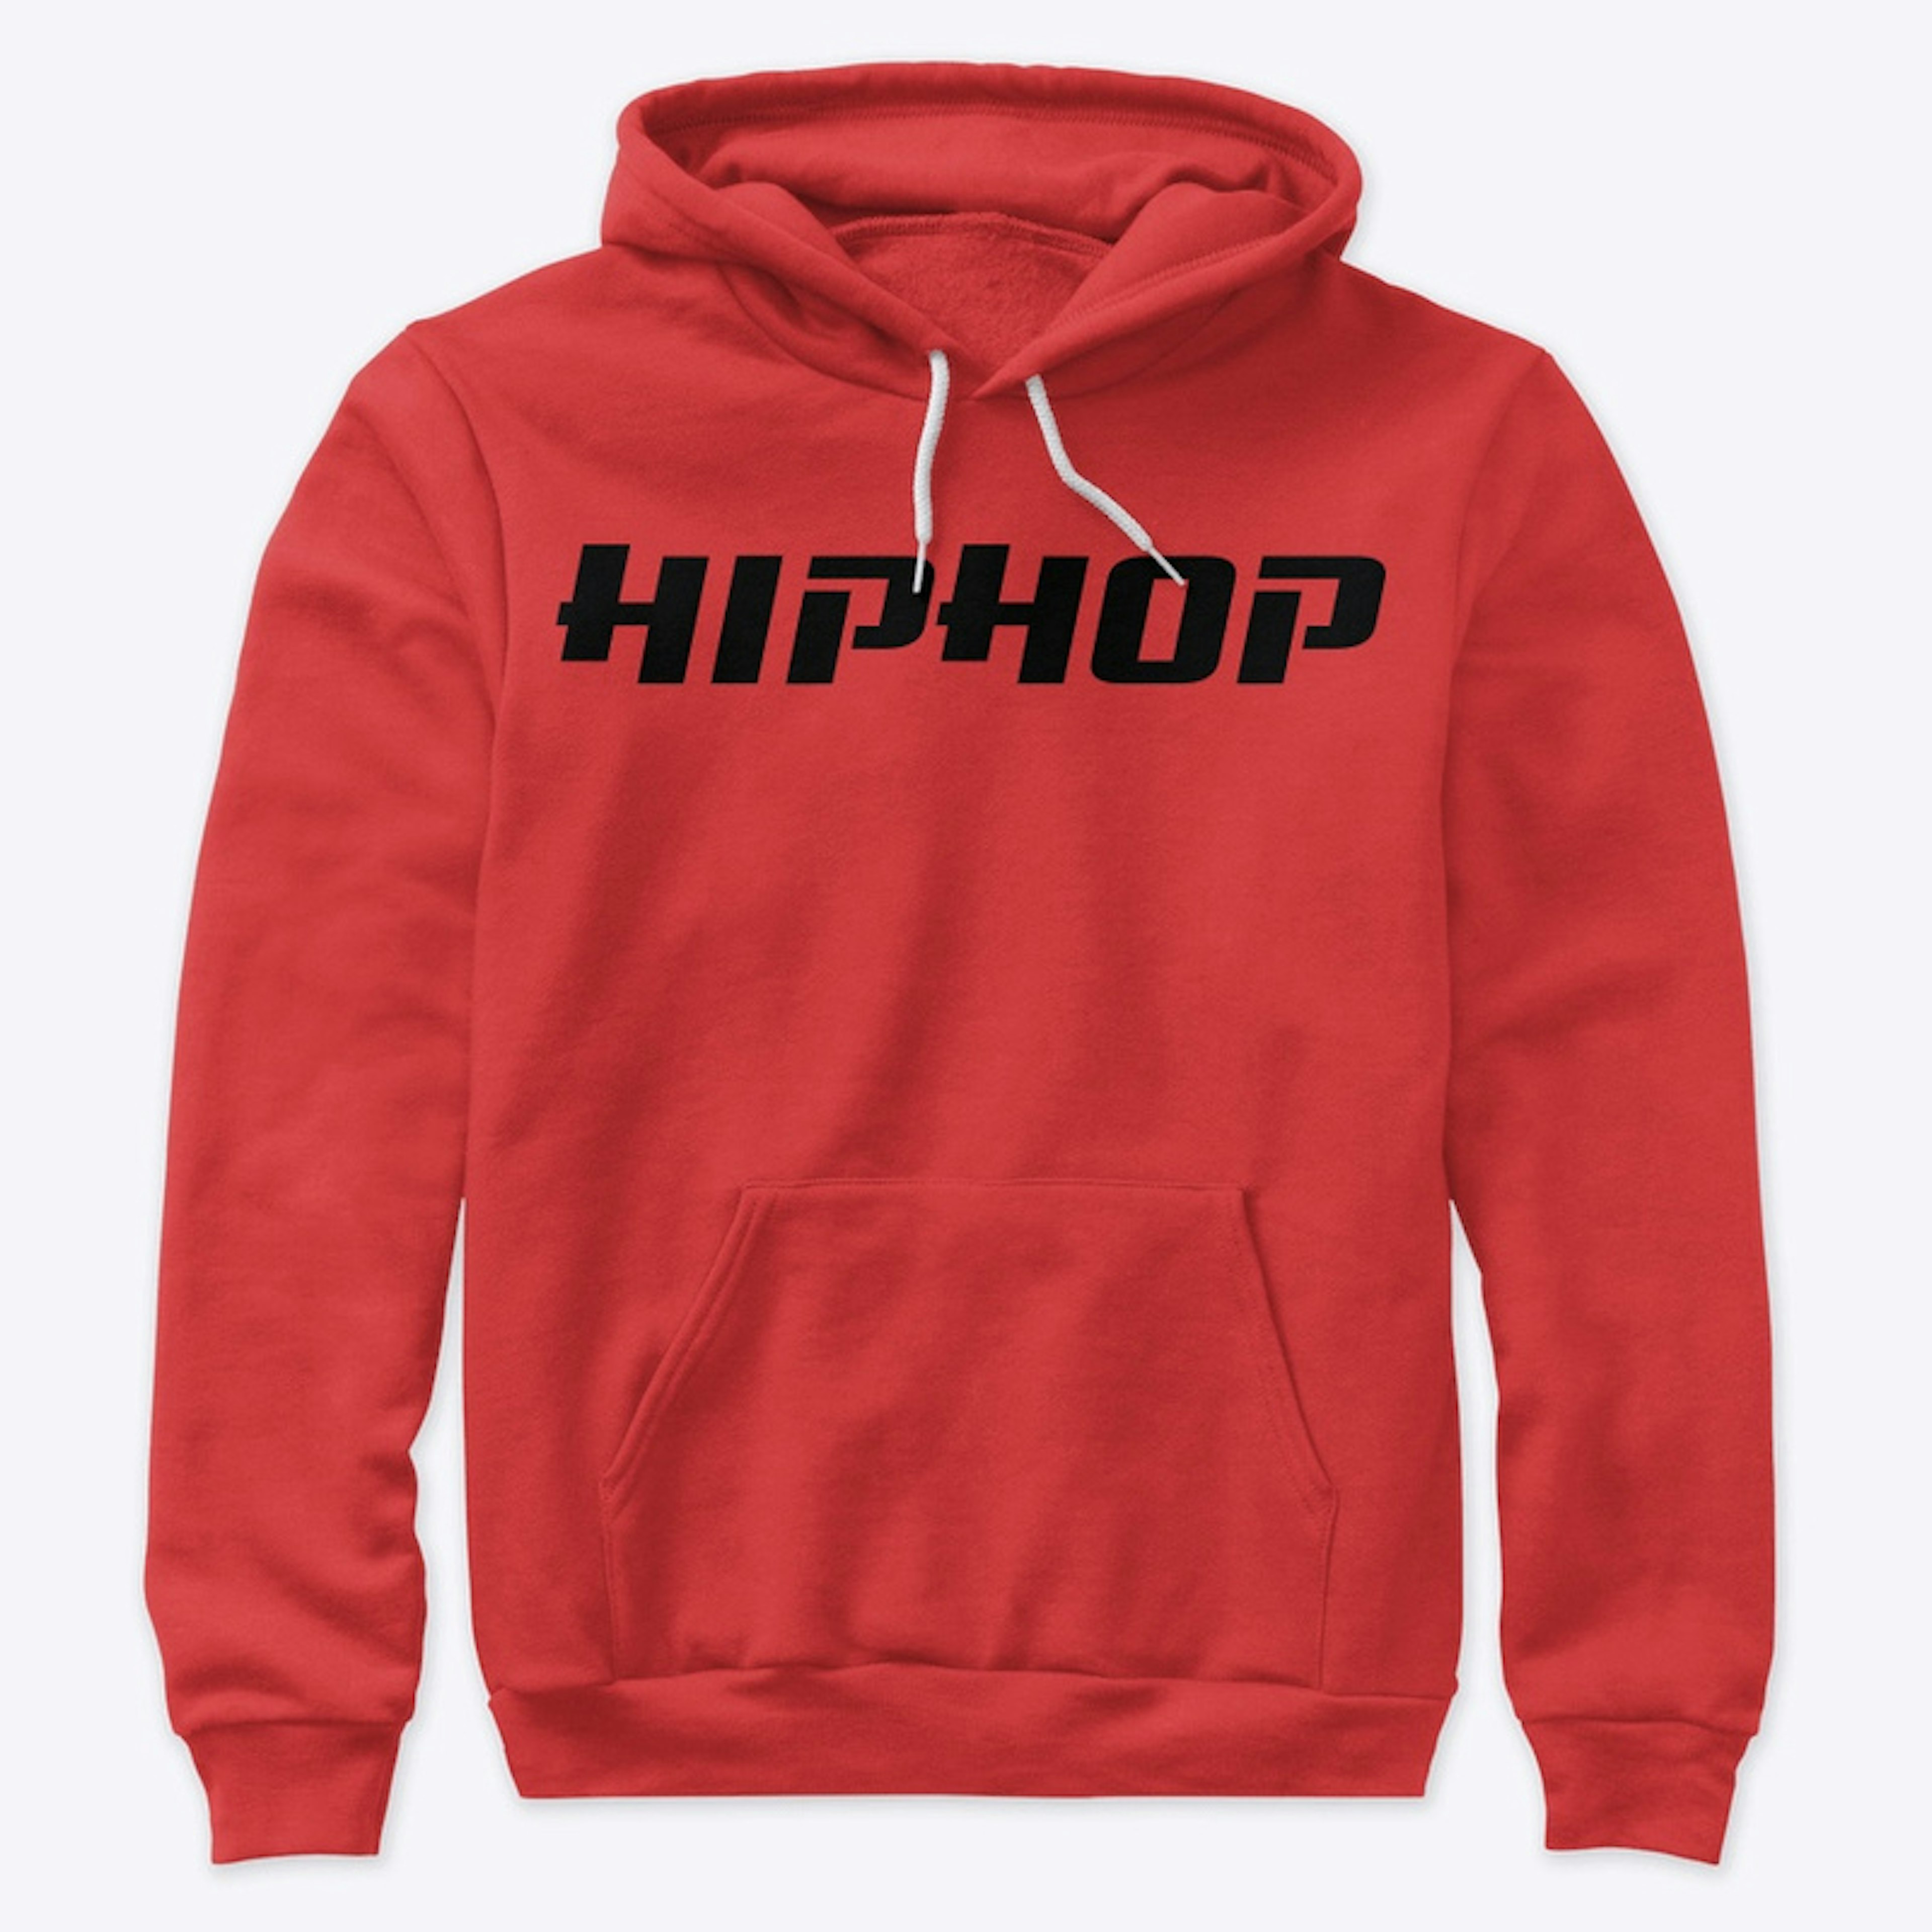 Hiphop logo design